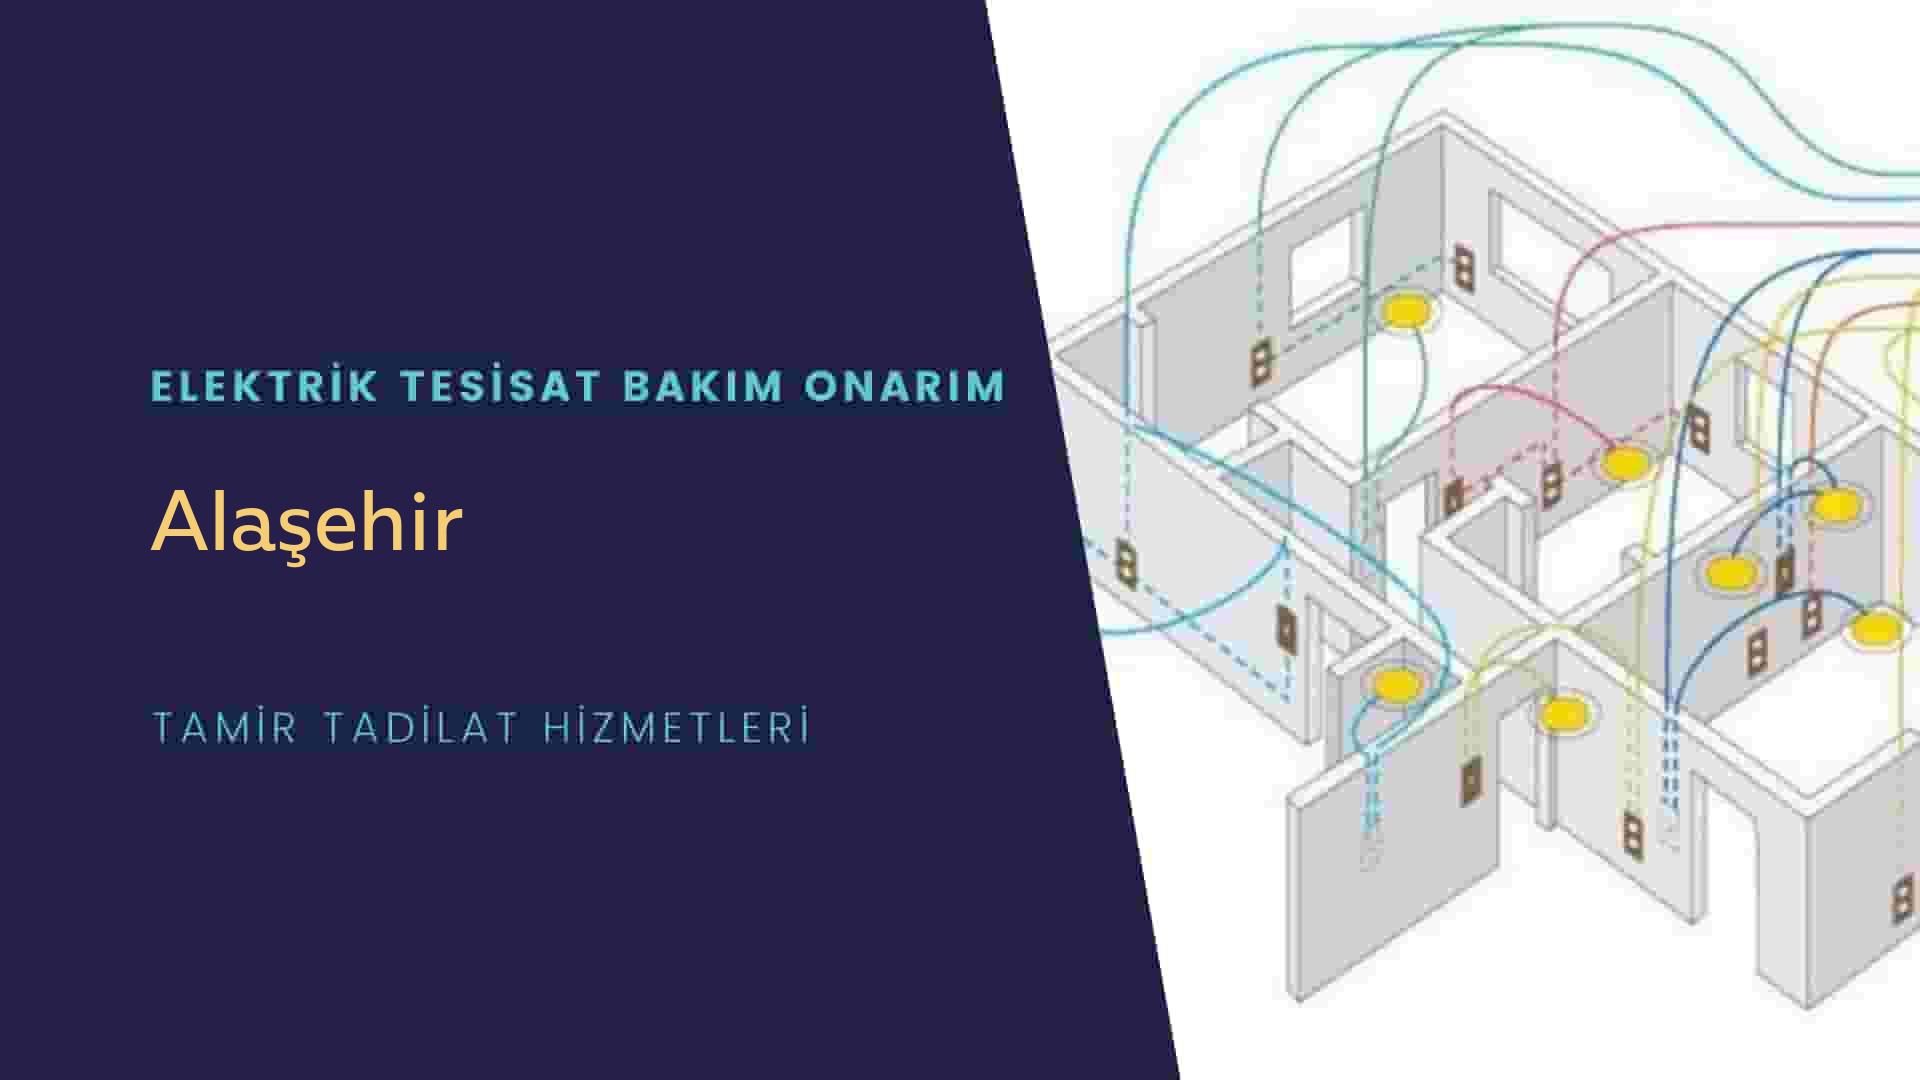 Alaşehir'de elektrik tesisatı ustalarımı arıyorsunuz doğru adrestenizi Alaşehir elektrik tesisatı ustalarımız 7/24 sizlere hizmet vermekten mutluluk duyar.